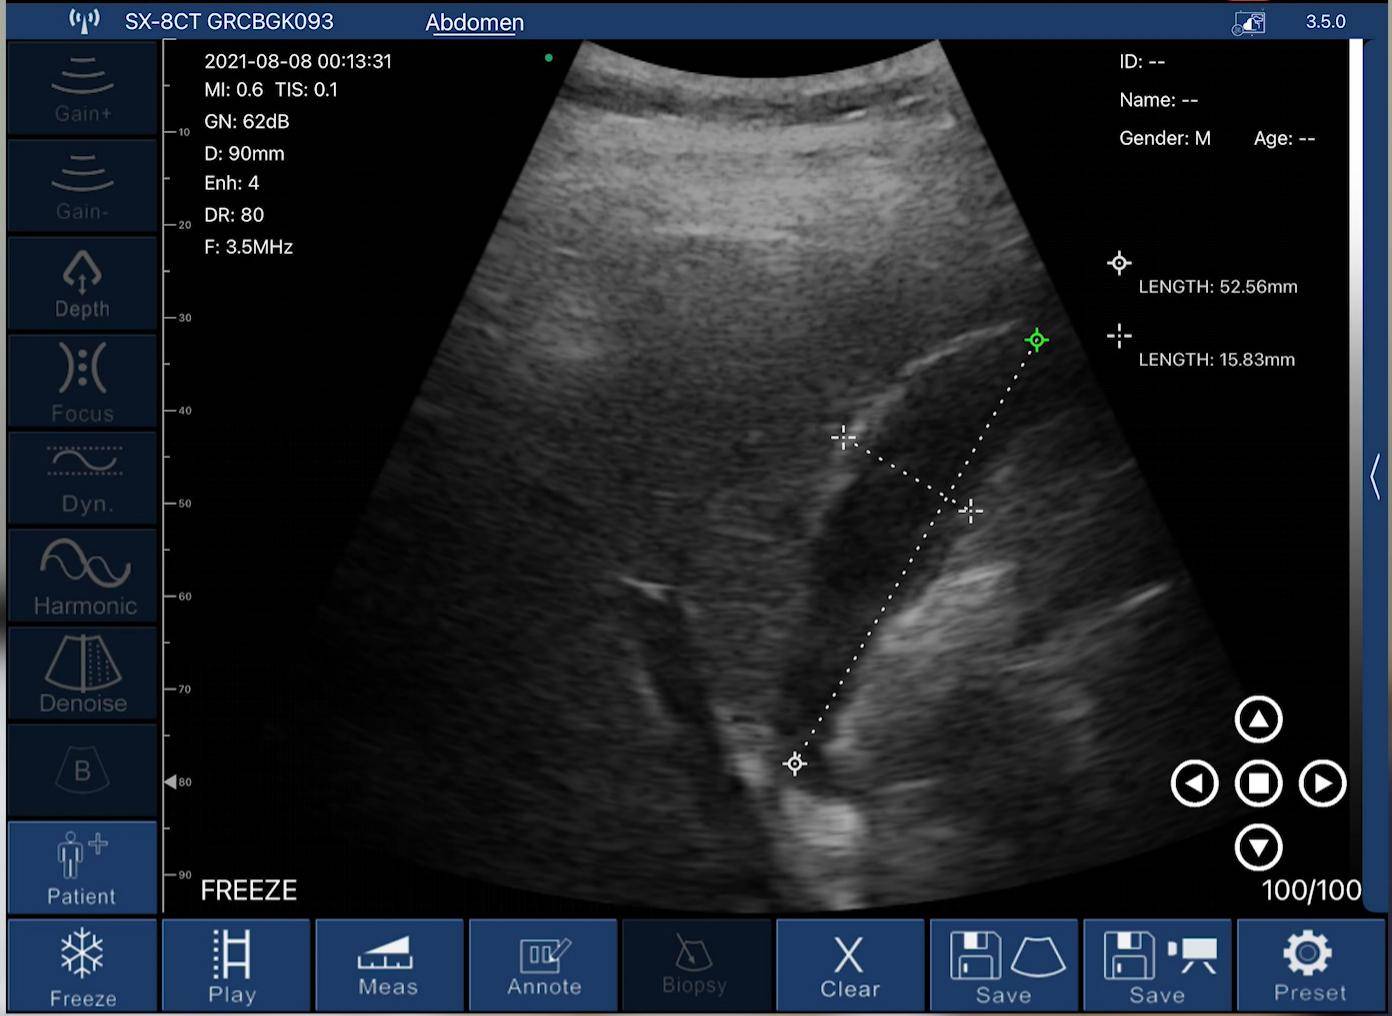 EagleView Handheld-Ultraschall zeigt die gemessene Länge der Gallenblase in der App an.